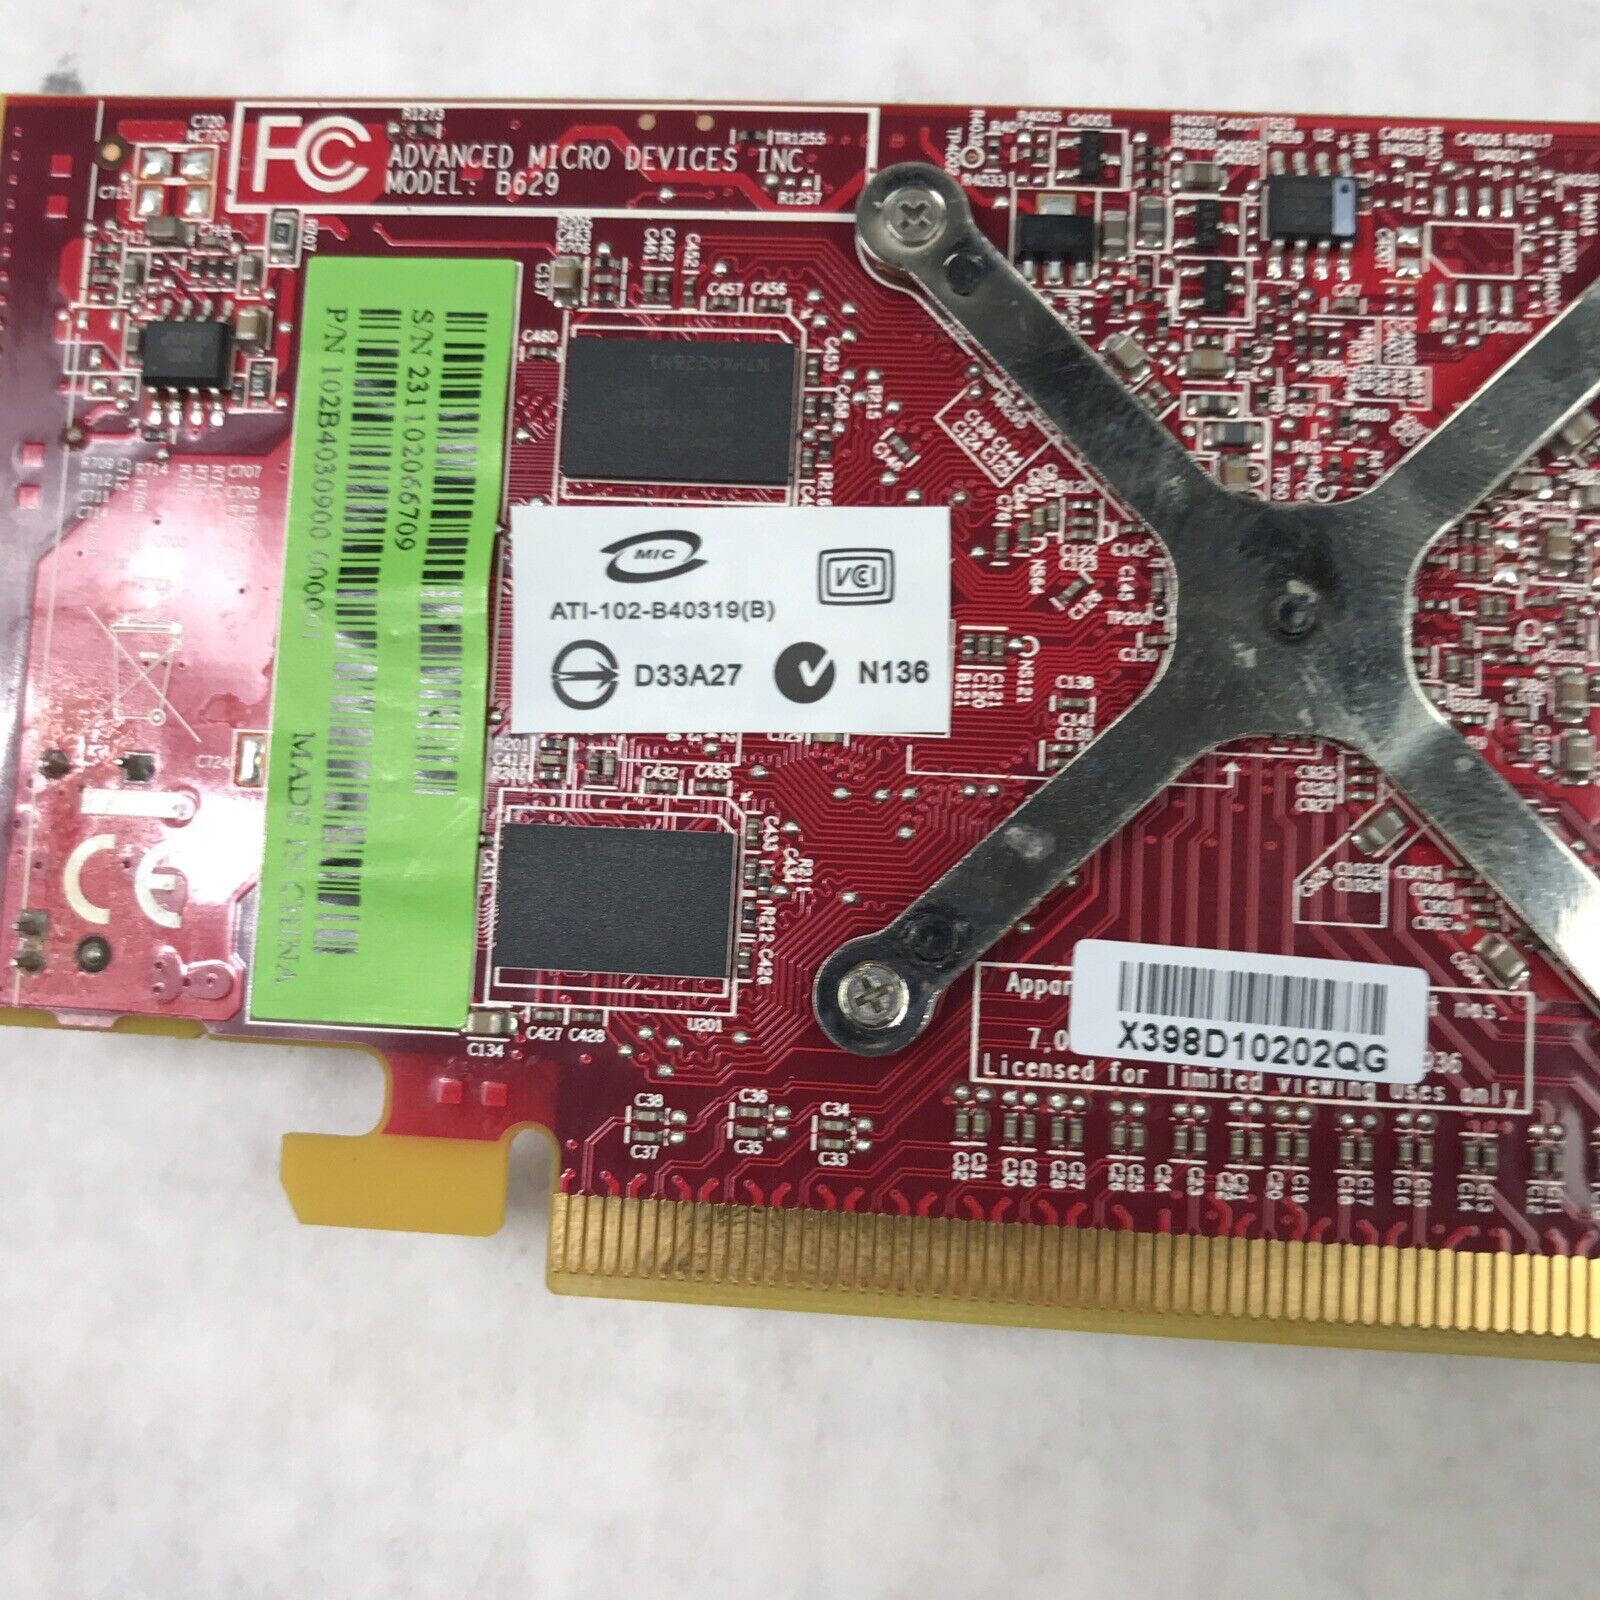 Lot of 2 Dell ATI Radeon HD 3450 PCI Express x16 Full Height Video Card 256MB